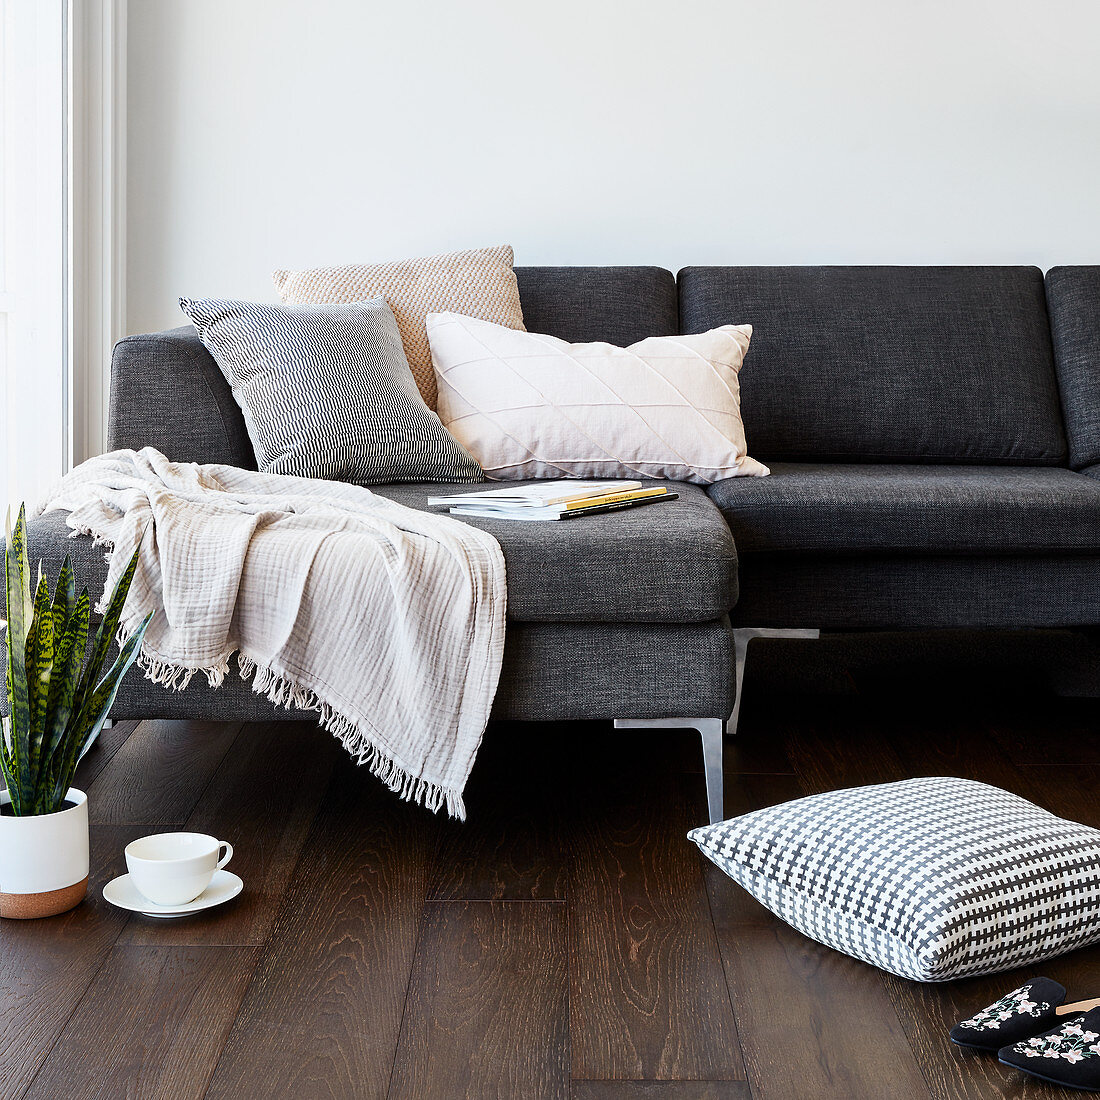 Kissen, Teetasse und Bogenhanf vorm grauen Sofa mit Plaid